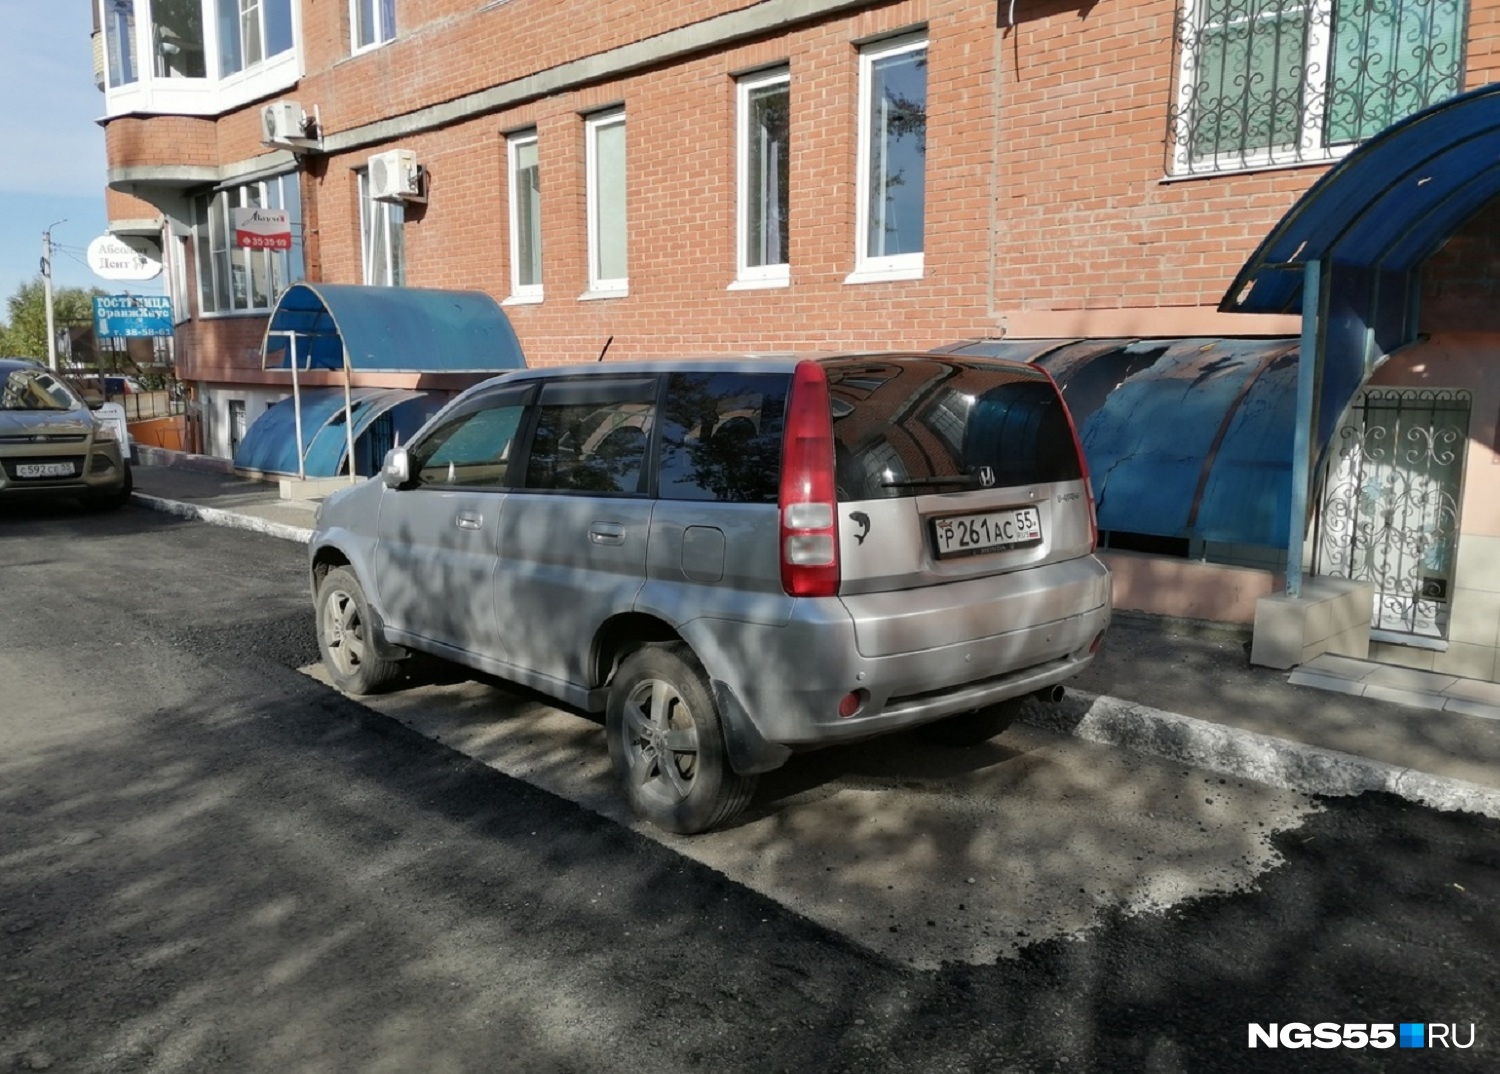 Дорожники рассказали, почему на Омской асфальт уложили вокруг припаркованной машины